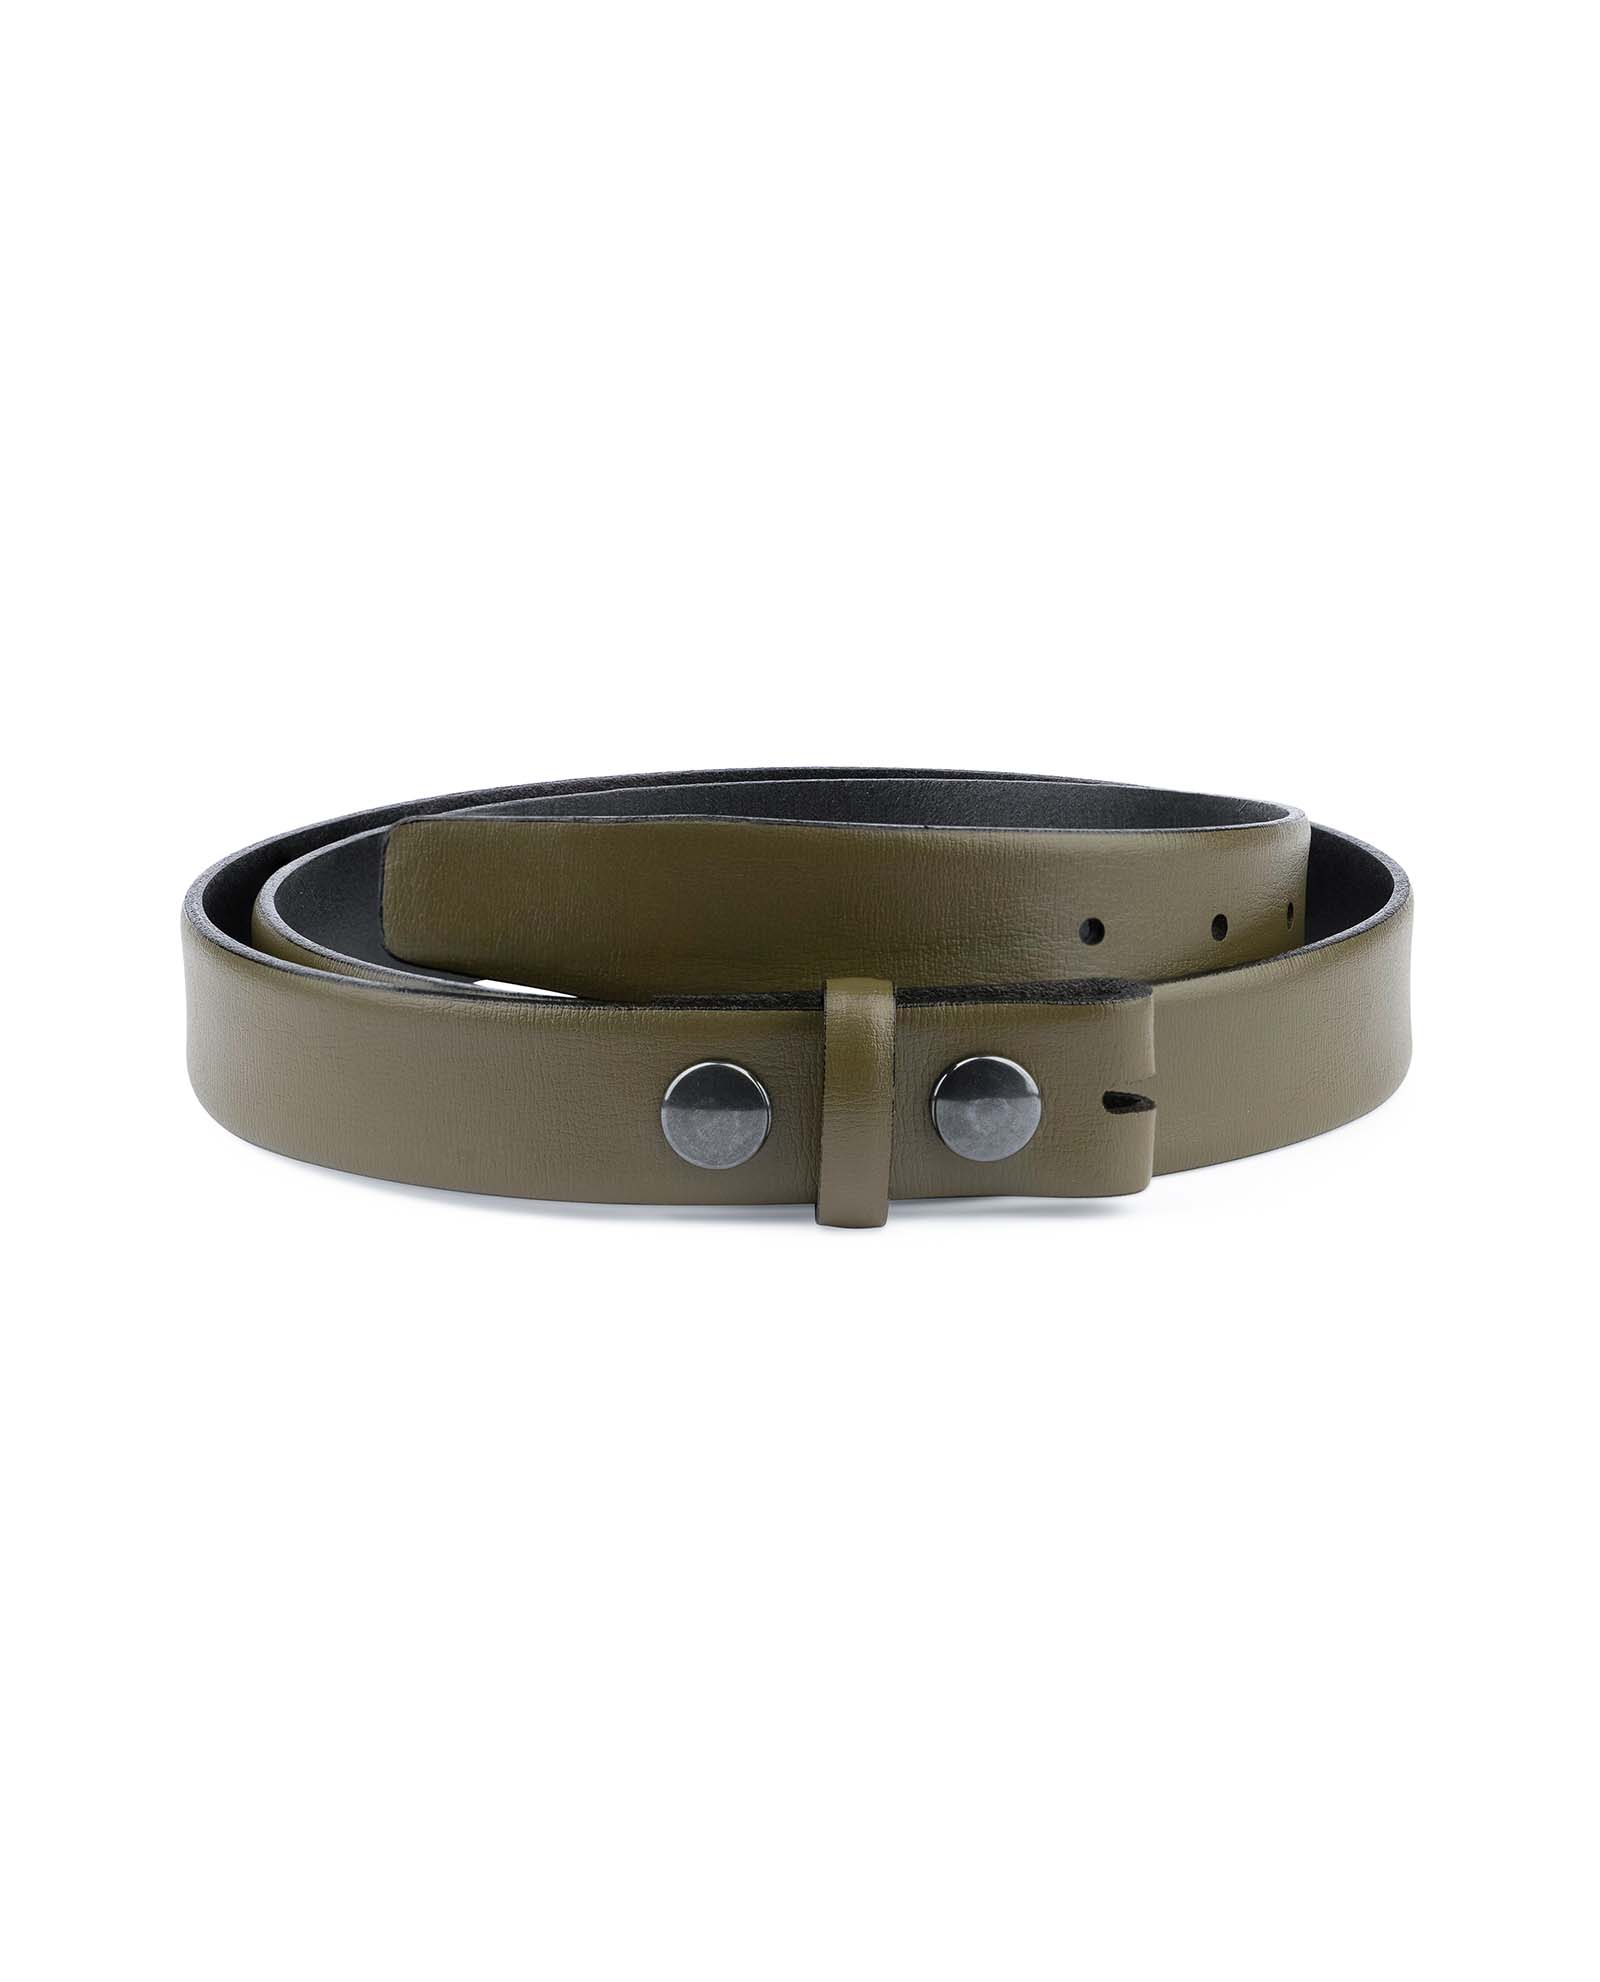 Buy Olive Green Belt | Without Buckle | LeatherBeltsOnline.com